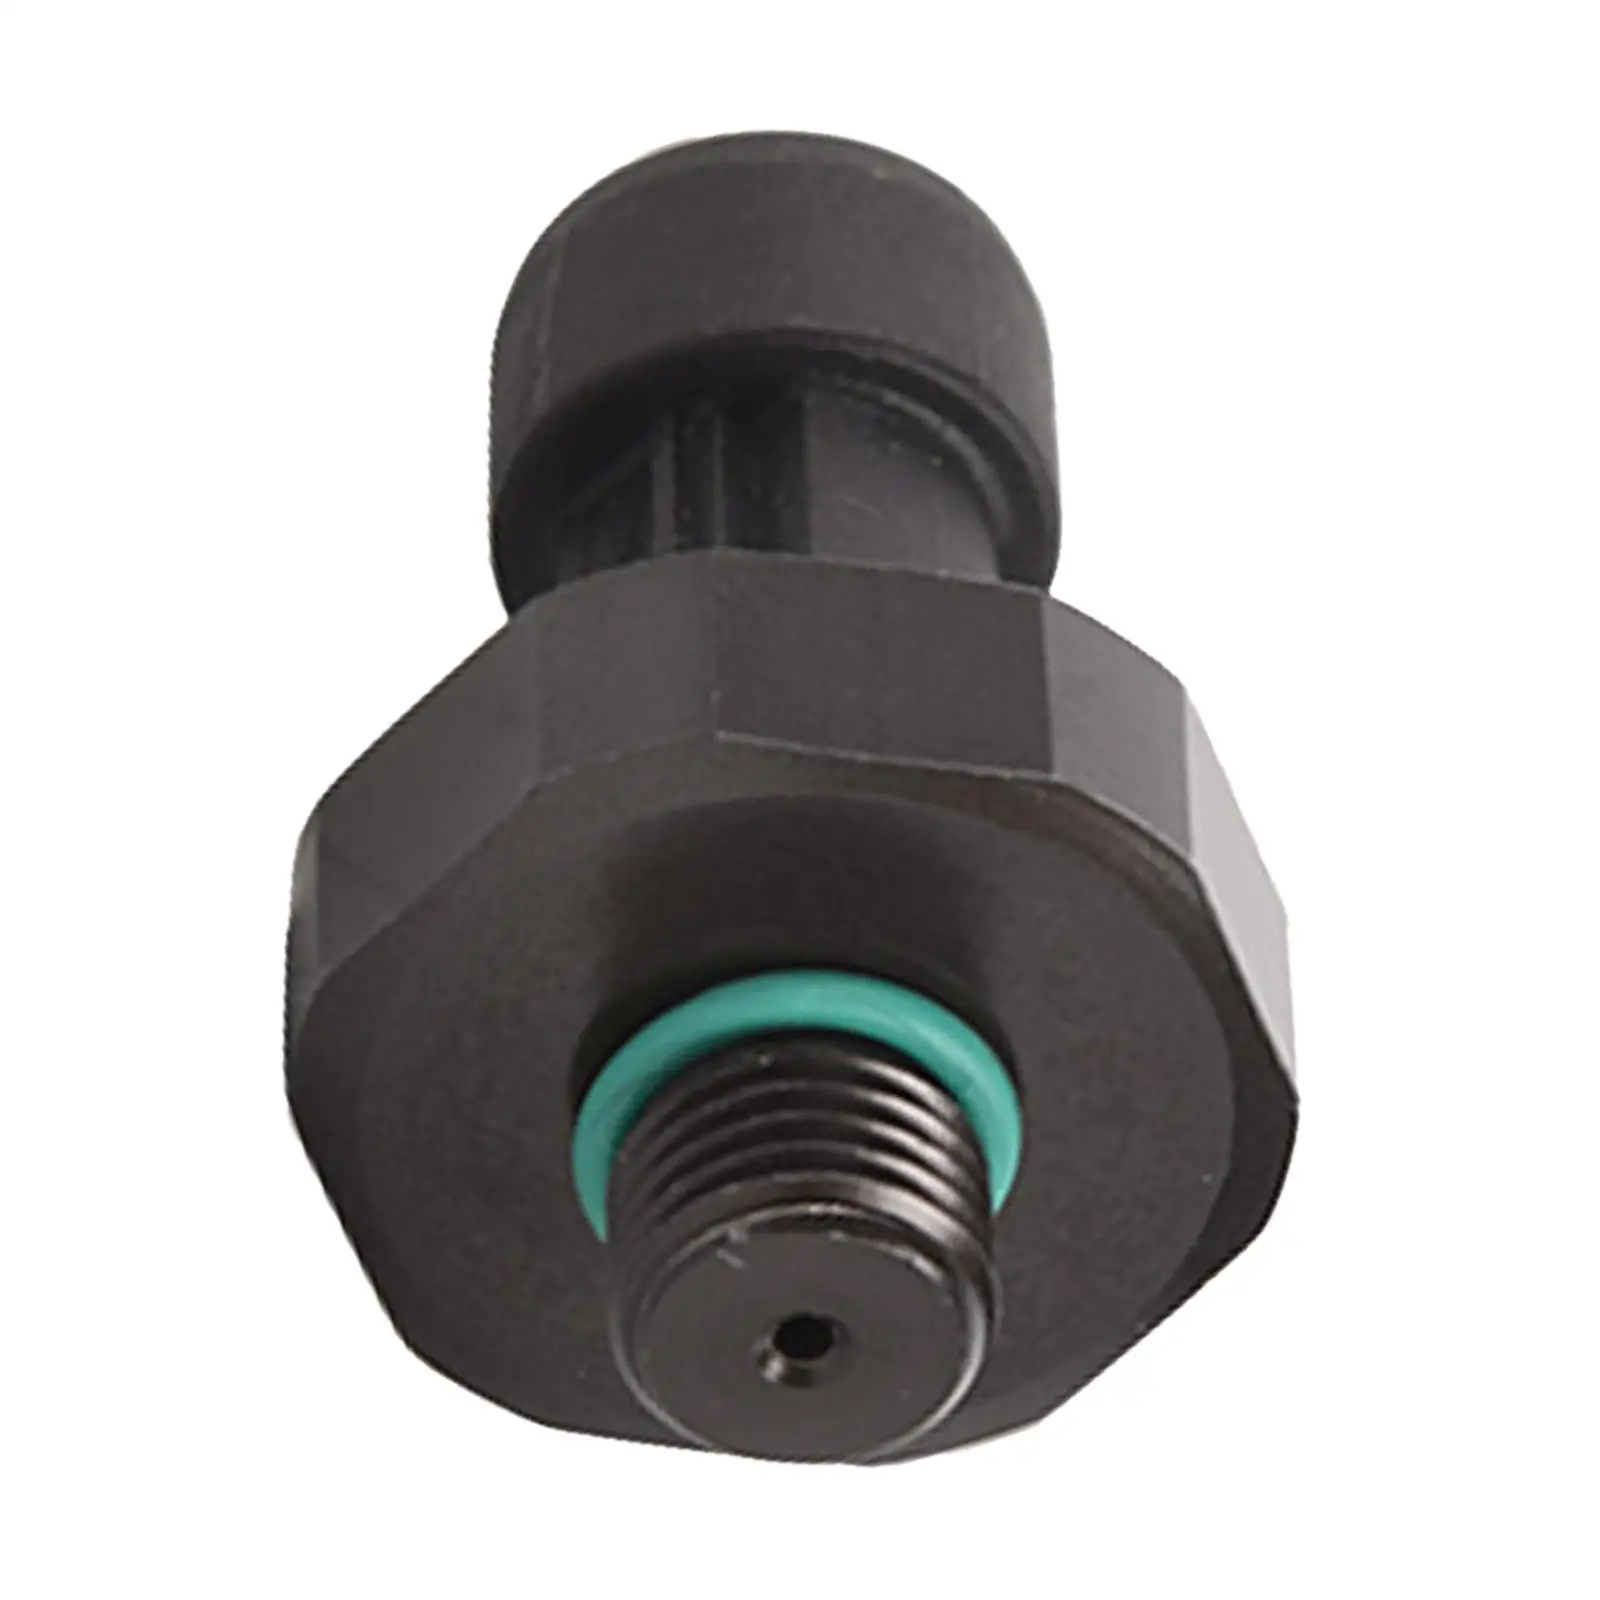 Oil Pressure Sensor 8513826, Automobile Pressure Sensor Car Auto Accessories for